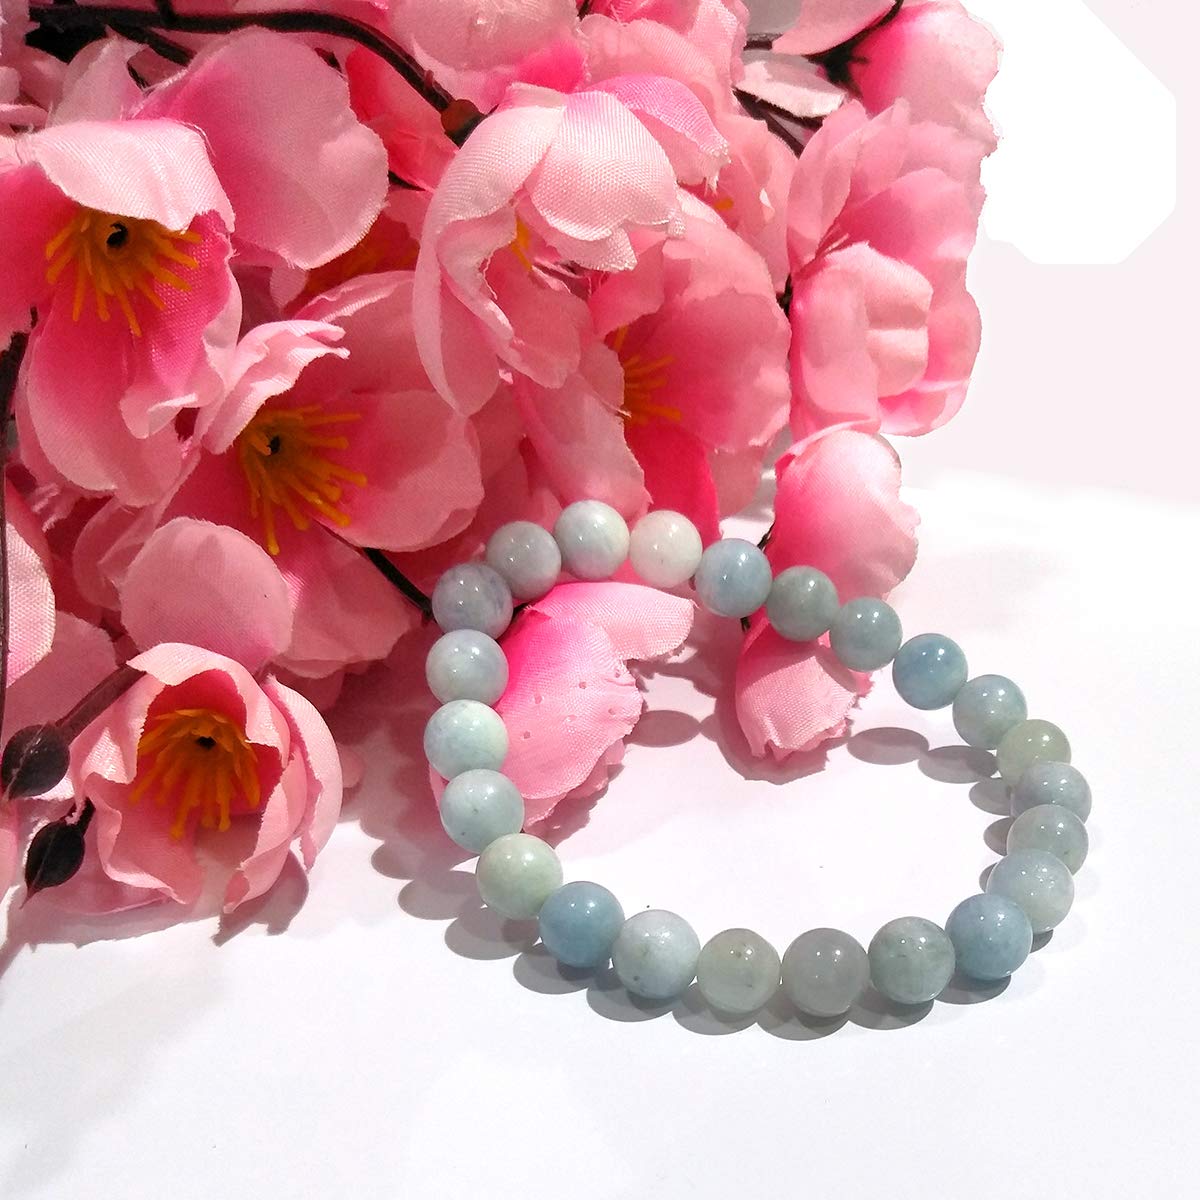 Healing Crystals - Wholesale Aquamarine Bracelet